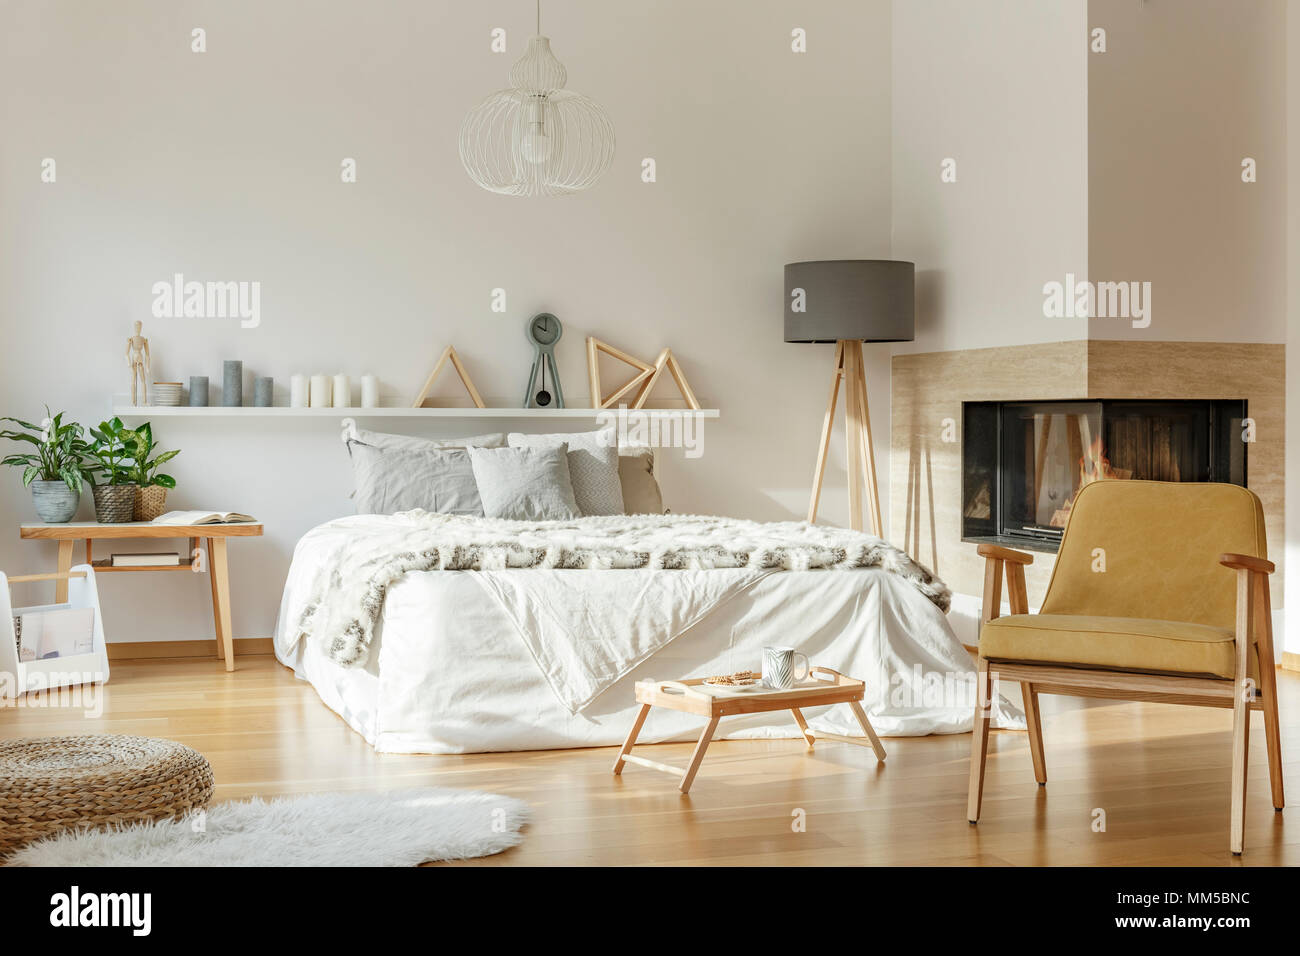 Intérieur chambre confortable avec cheminée, un lit king-size, un tapis, chaise, lampe, ornements et plancher en bois Banque D'Images